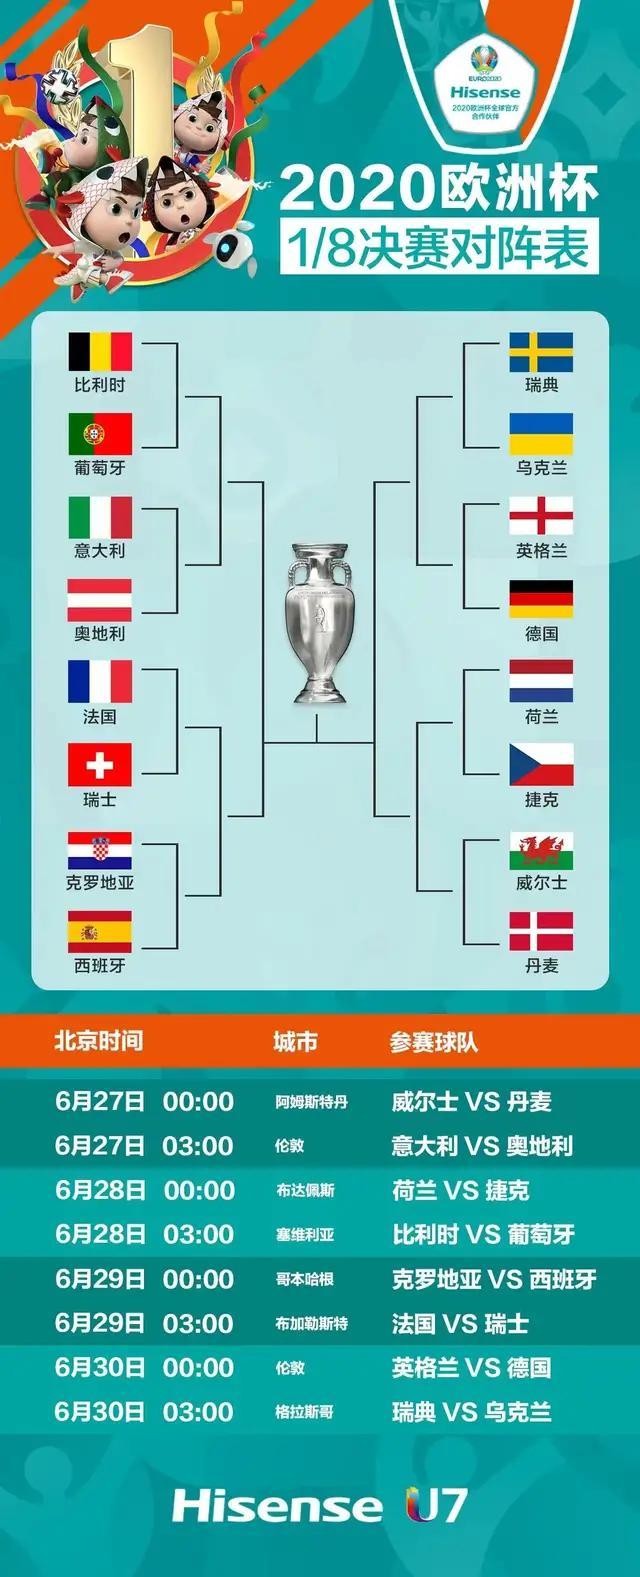 欧洲杯分析比分预测谁将成为冠军